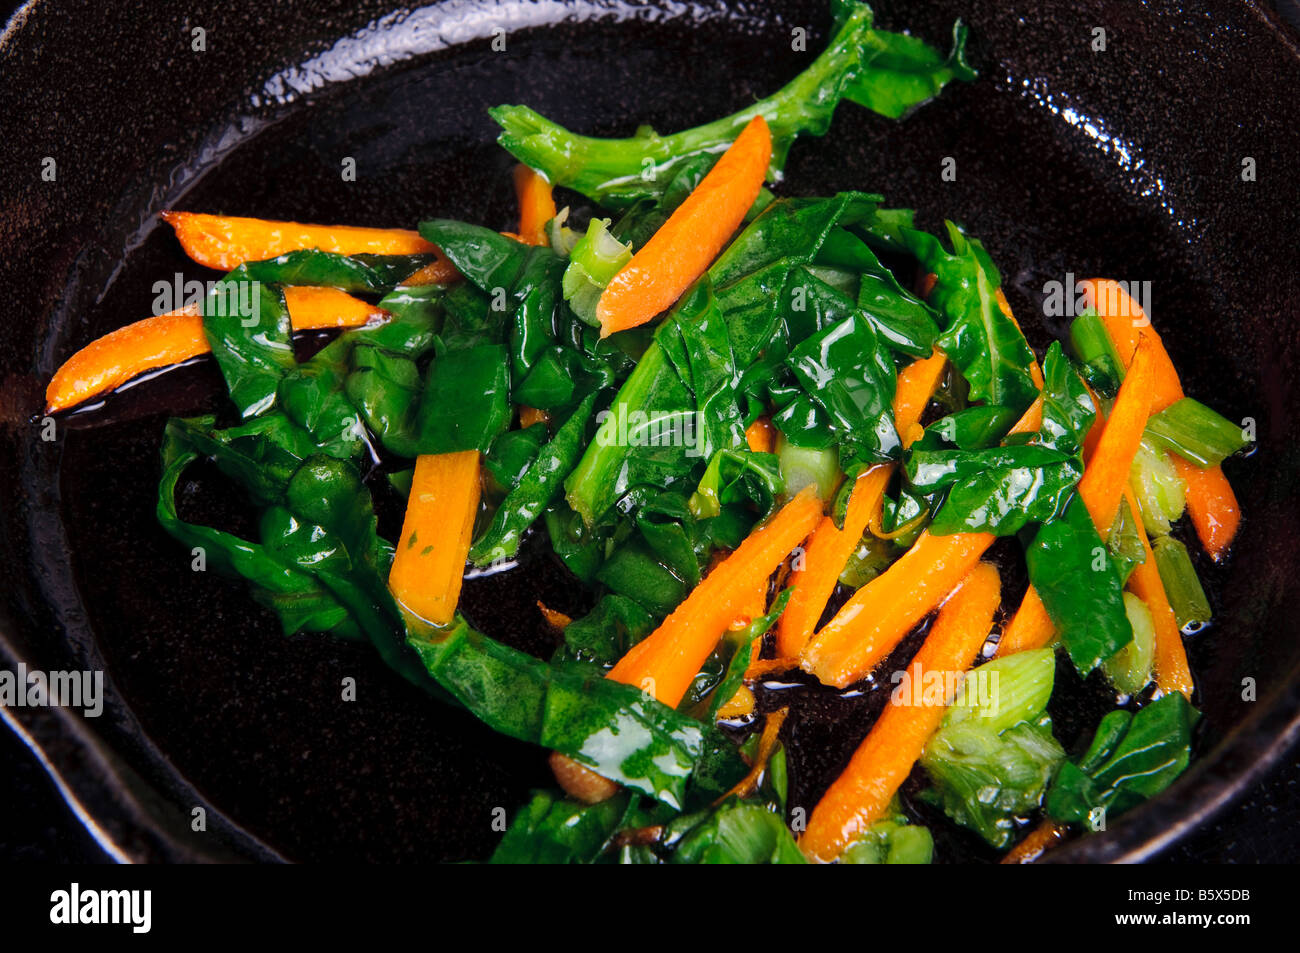 Gemüse in einer Pfanne sautieren Stockfotografie - Alamy